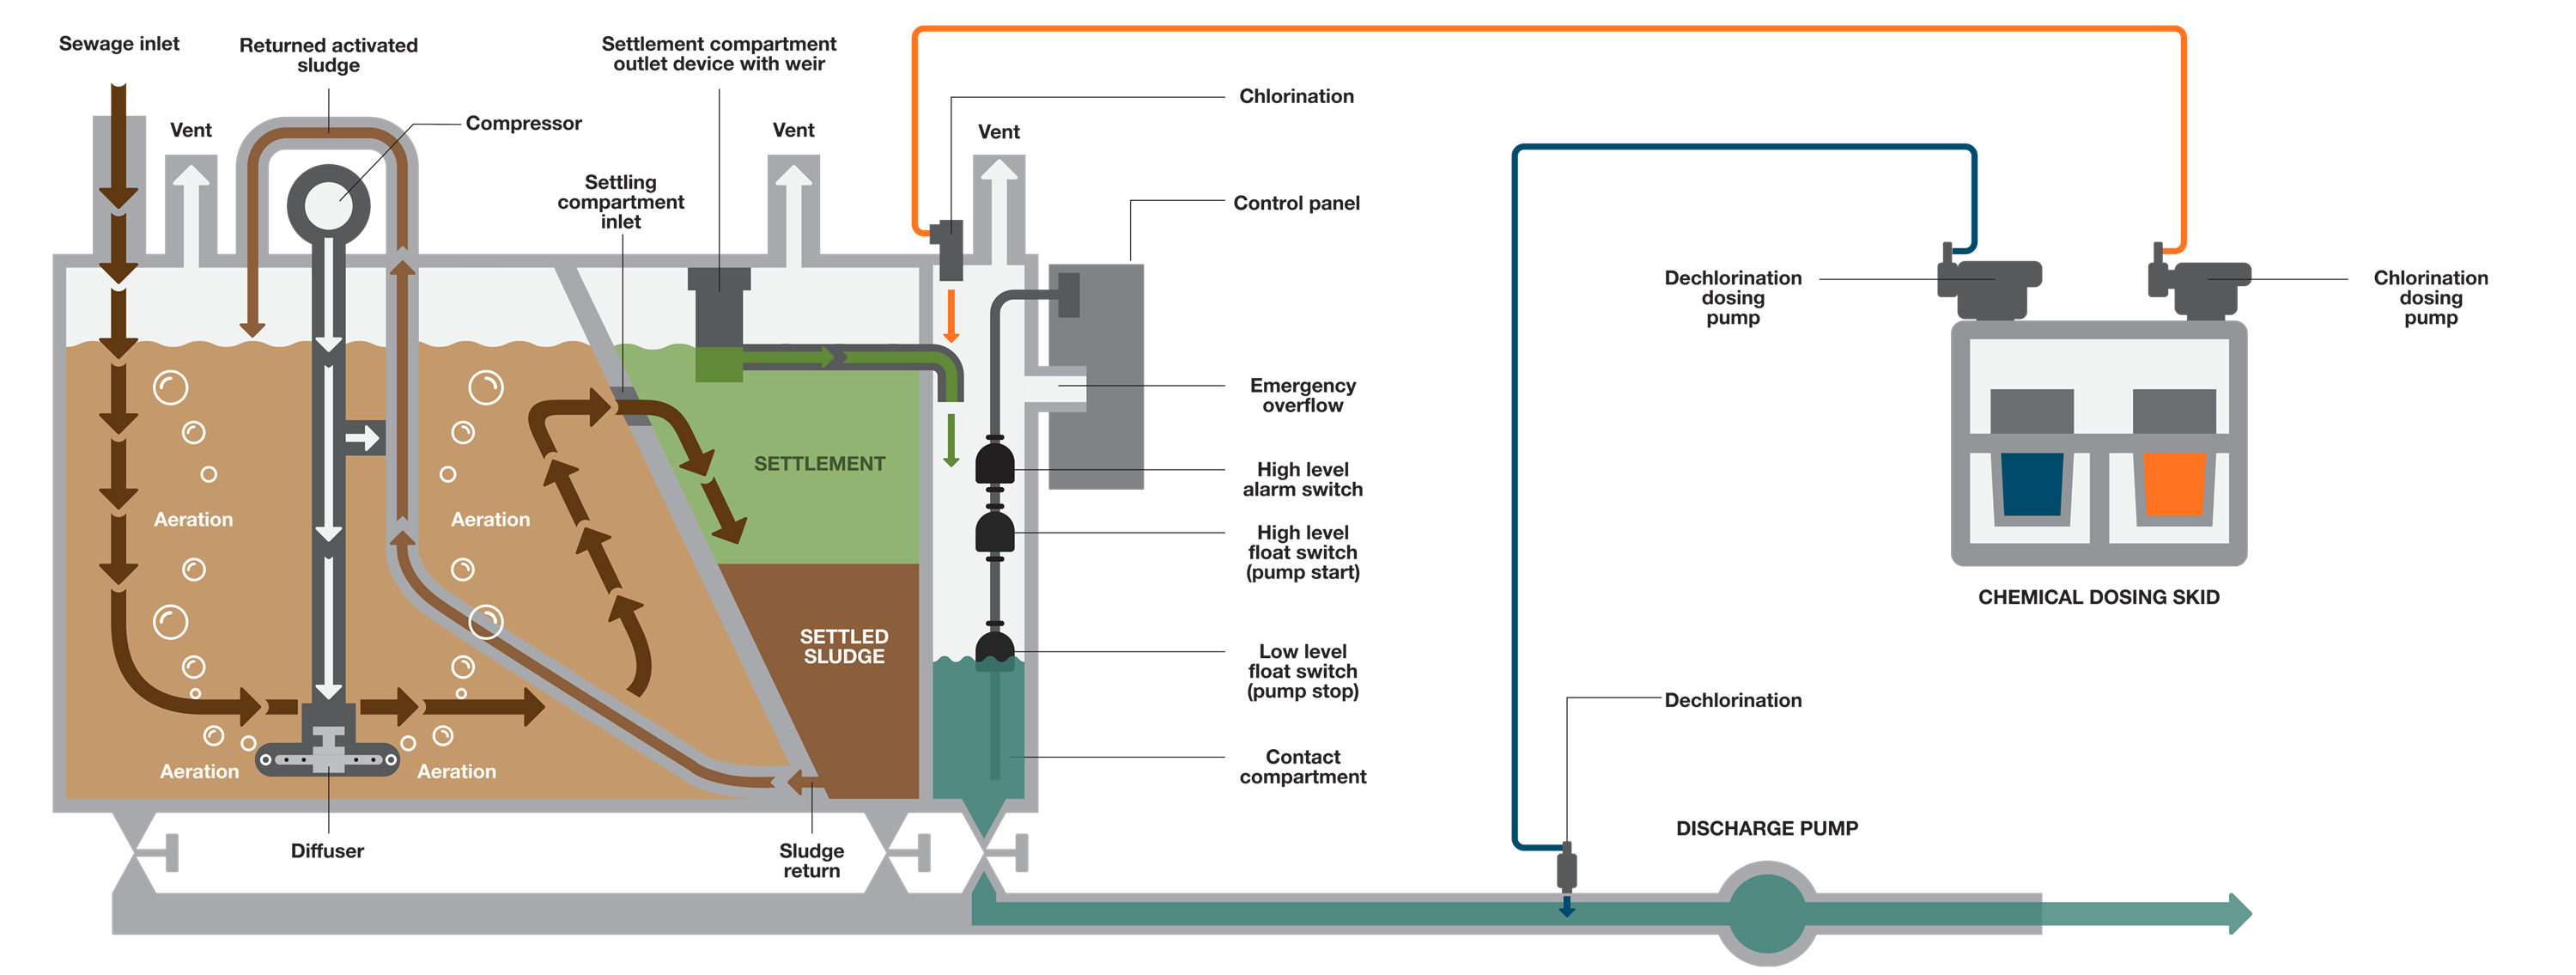 Process Flow Wärtsilä sewage treatment plant